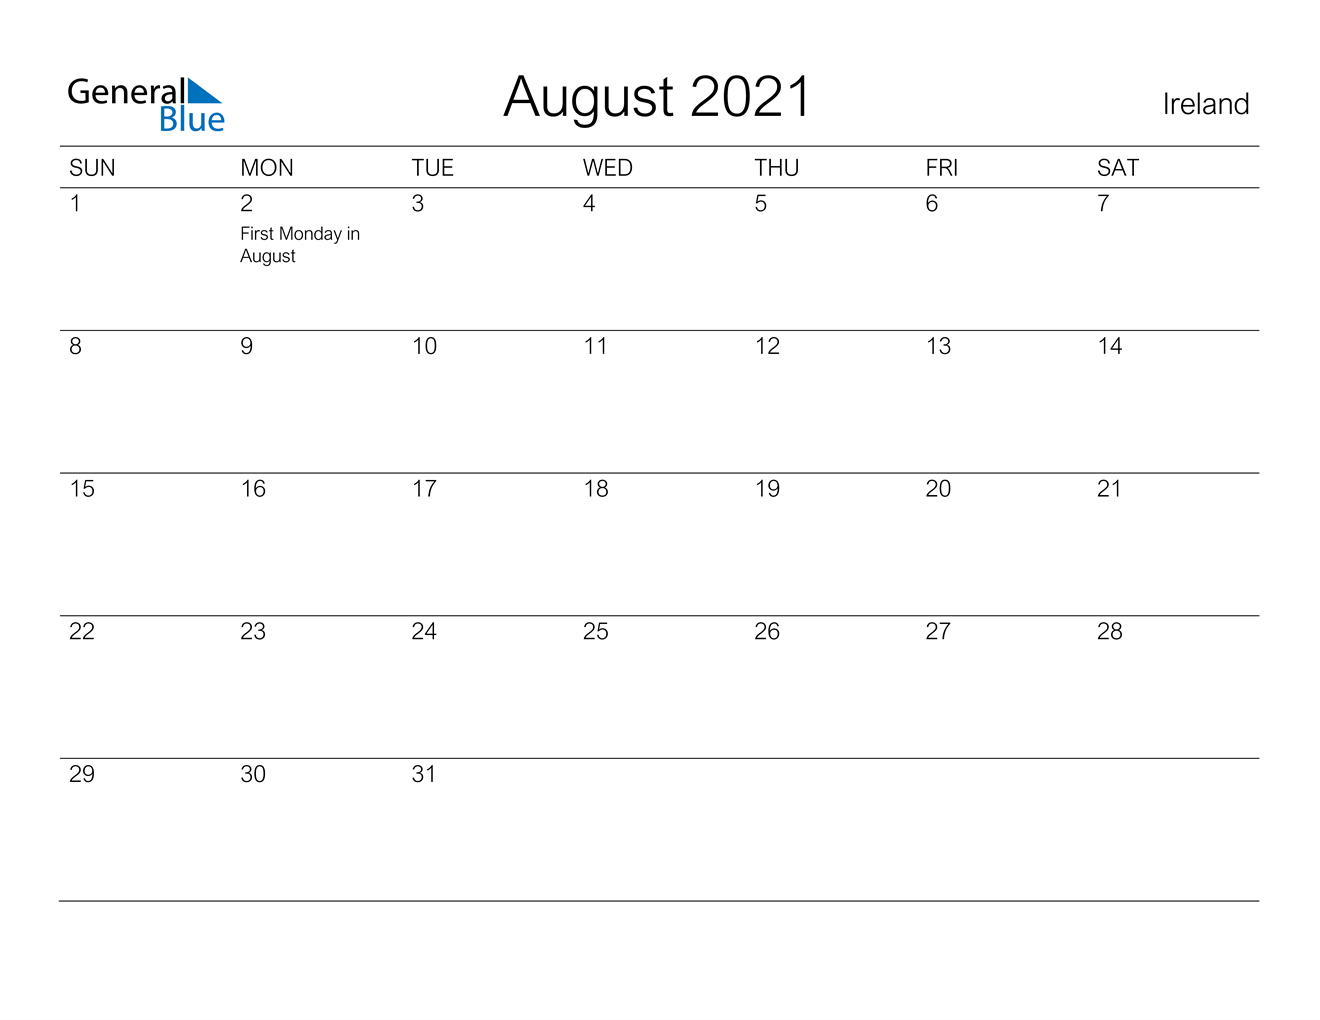 August 2021 Calendar - Ireland